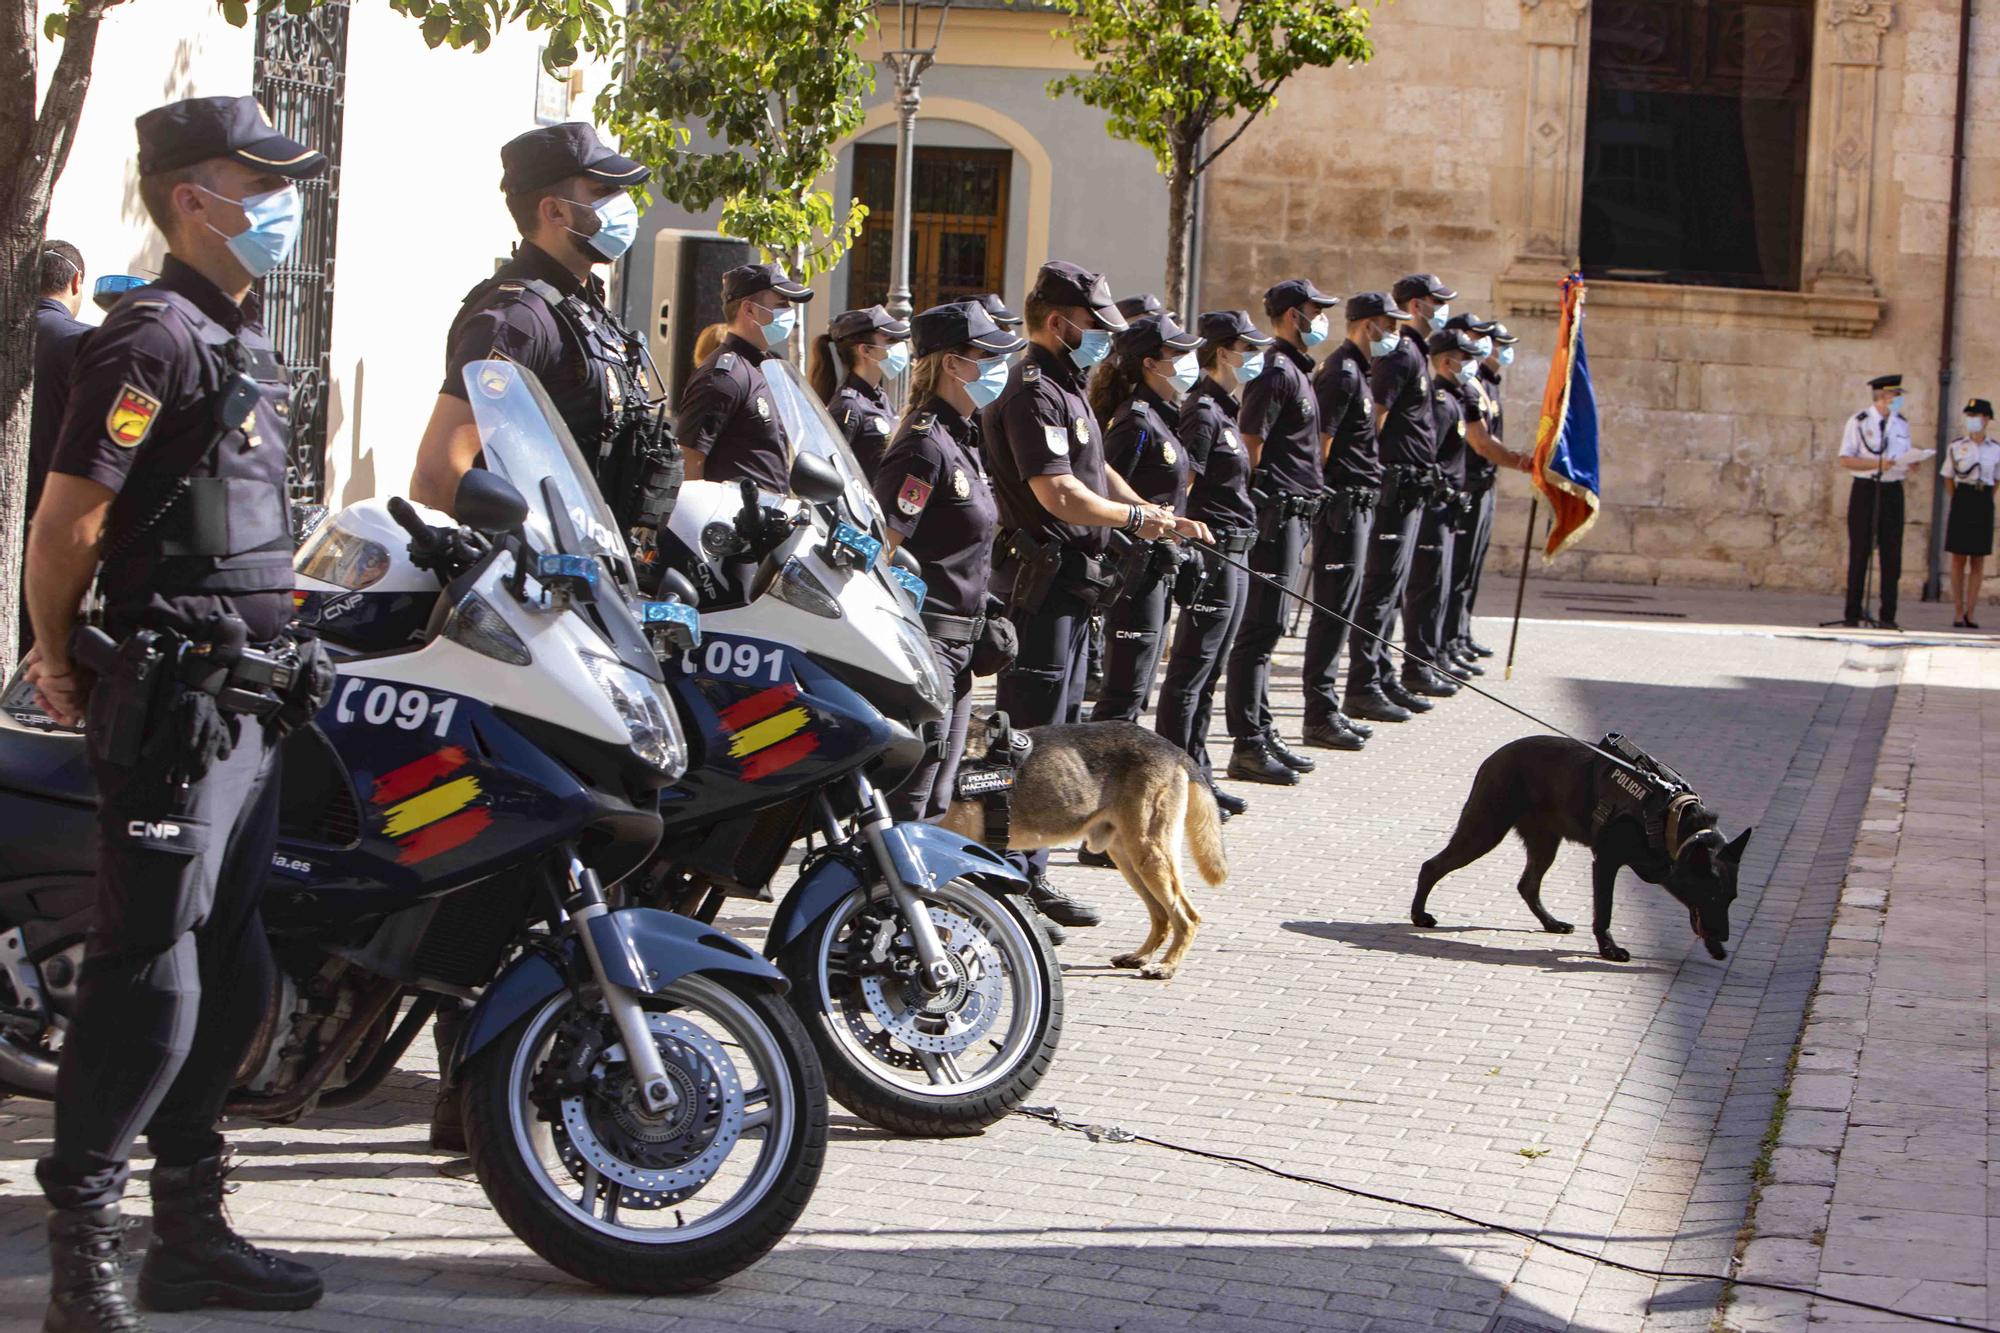 Entrega del bastón de mando al inspector jefe de la Comisaría de la Policía Nacional de Alzira - Algemesí.